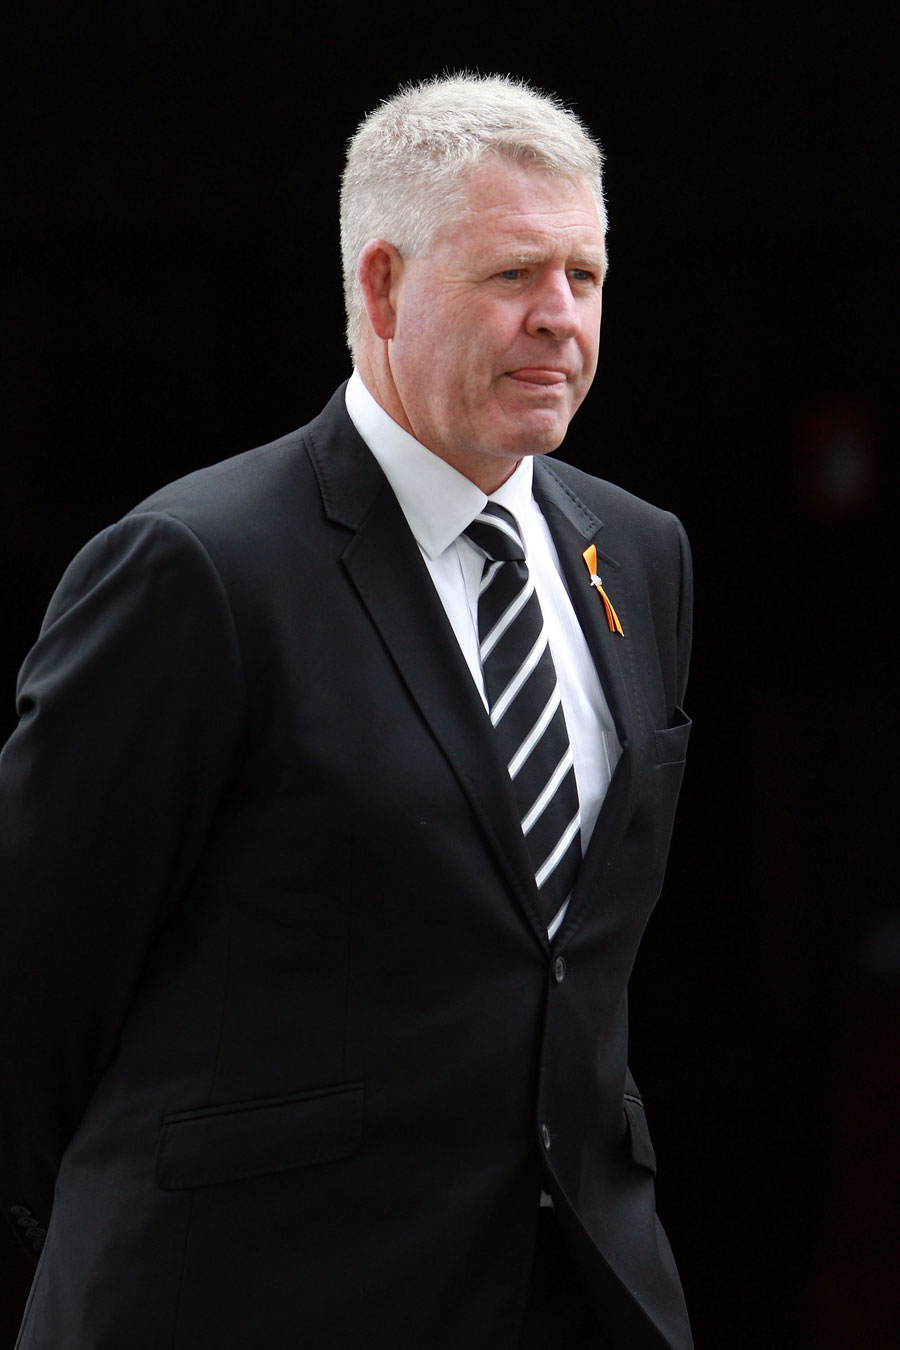 NZRU chief executive Steve Tew attends the funeral of Jock Hobbs